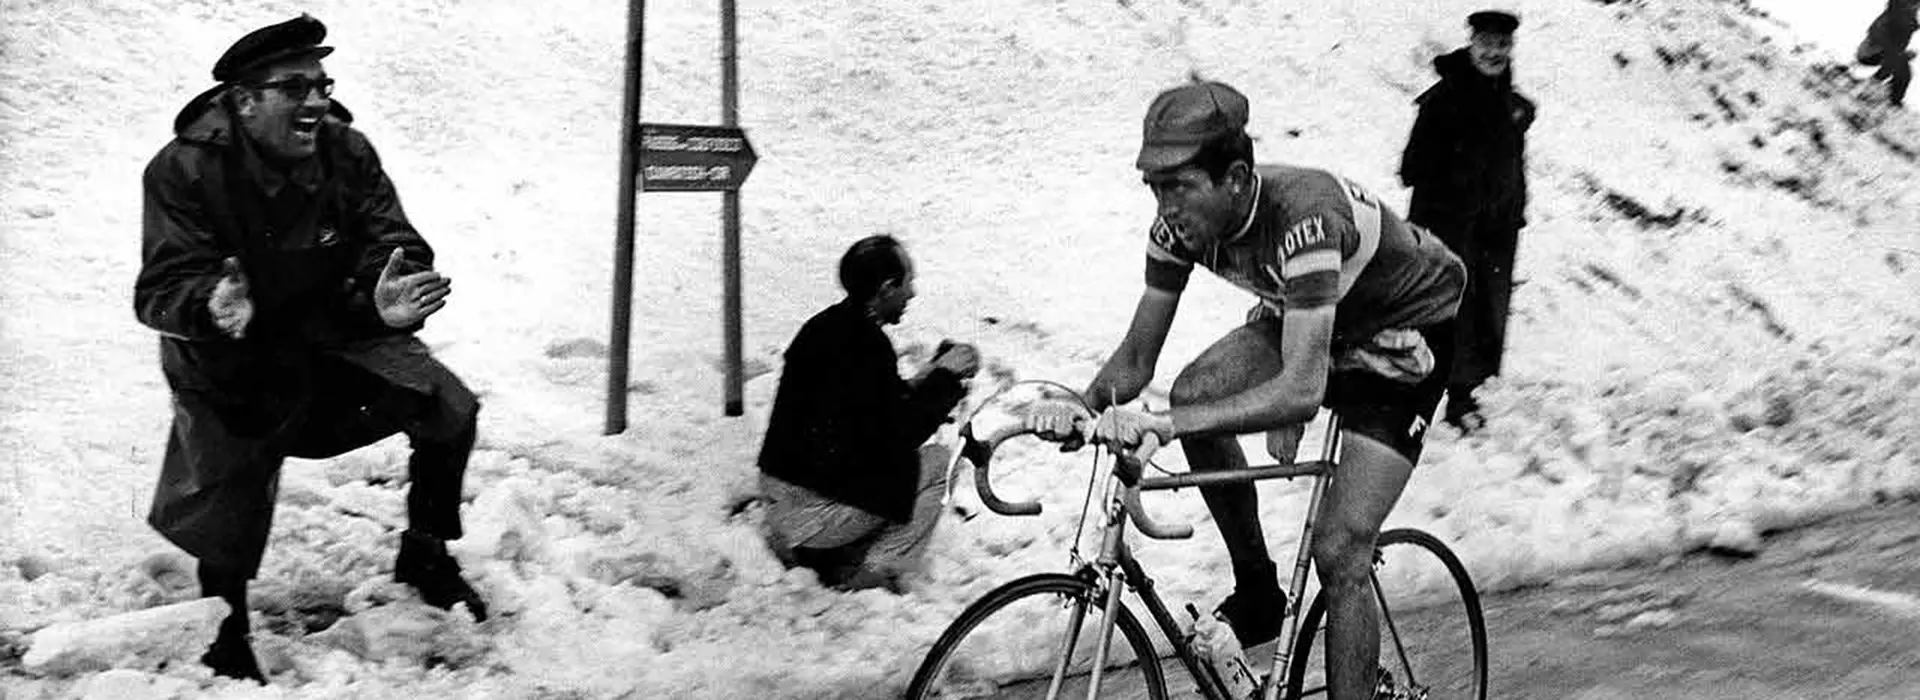 Foto storica in bianco e nero di Italo Zilioli al Giro d’Italia del 1969